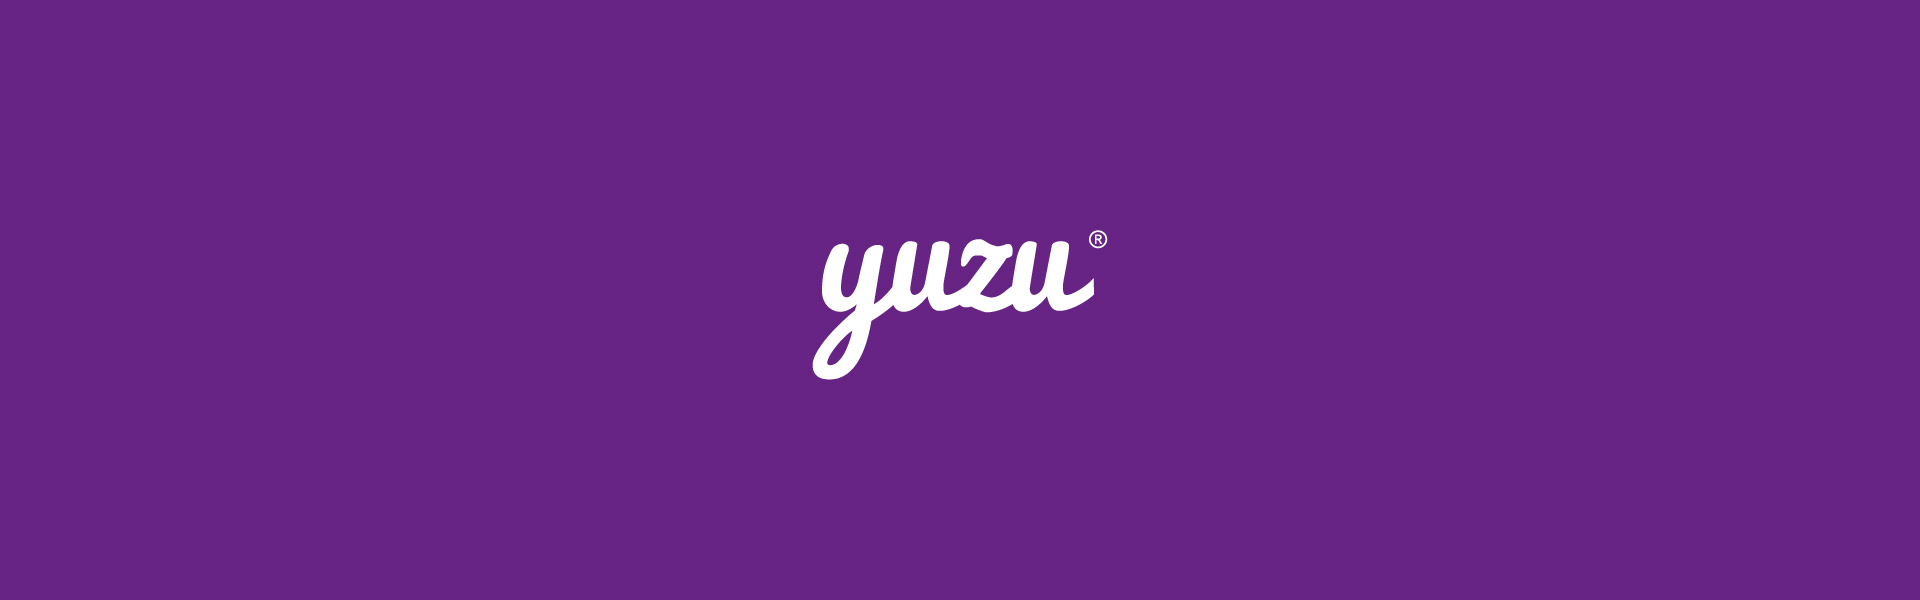 Logos-Instudio-Yuzu